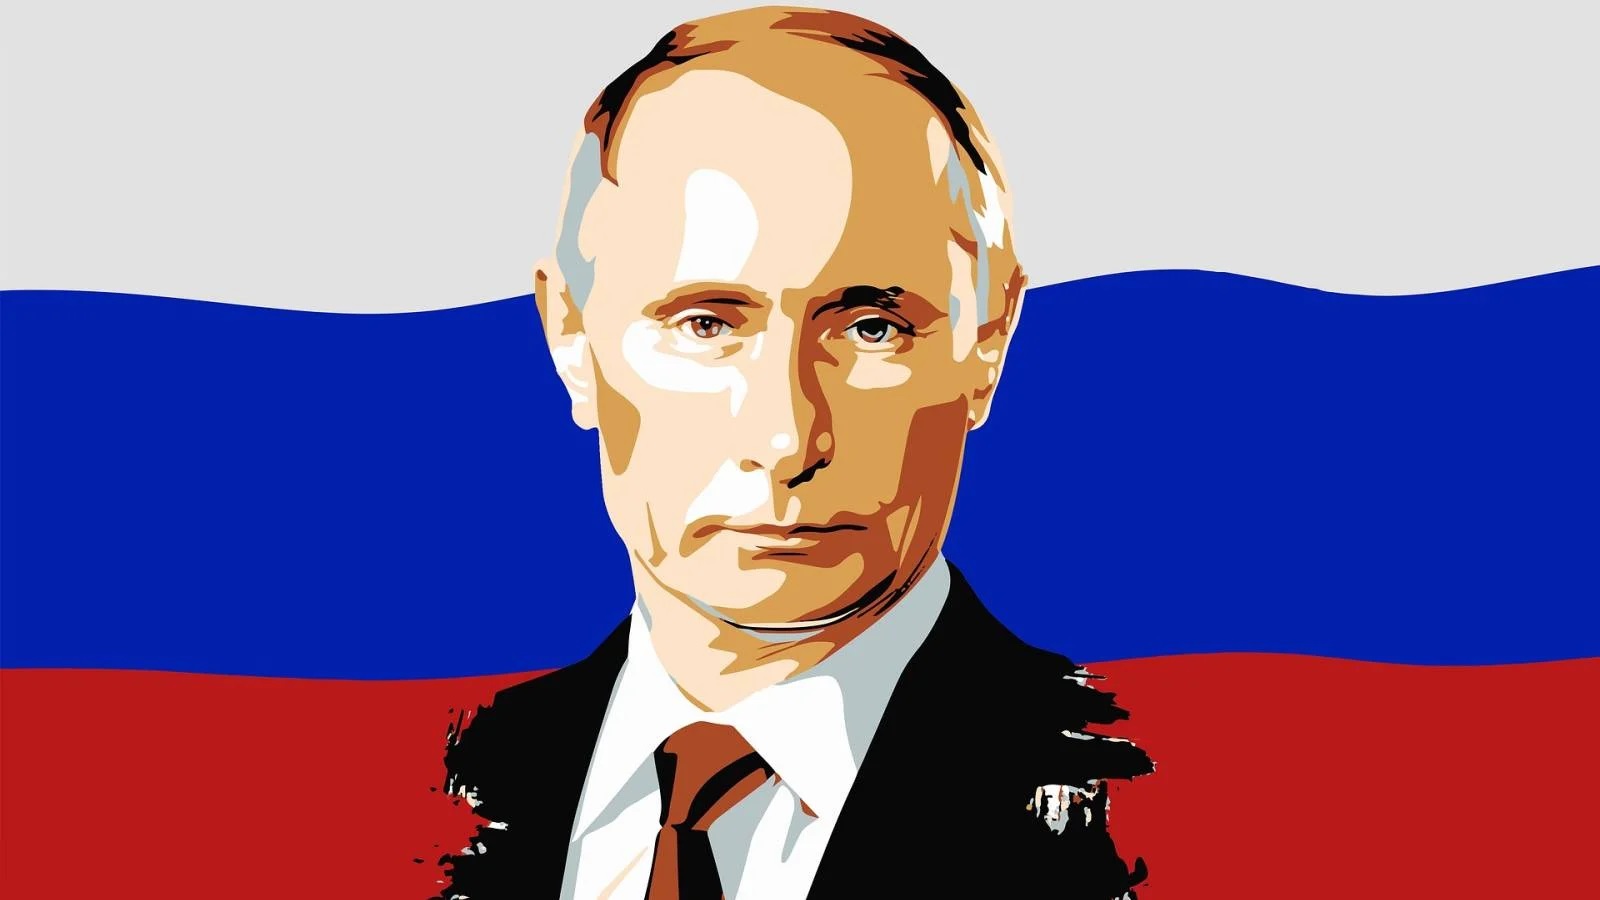 Vladimir Putin Urmeaza sa Anunte ca va Candida din Nou la Functia de Presedinte al Rusiei!